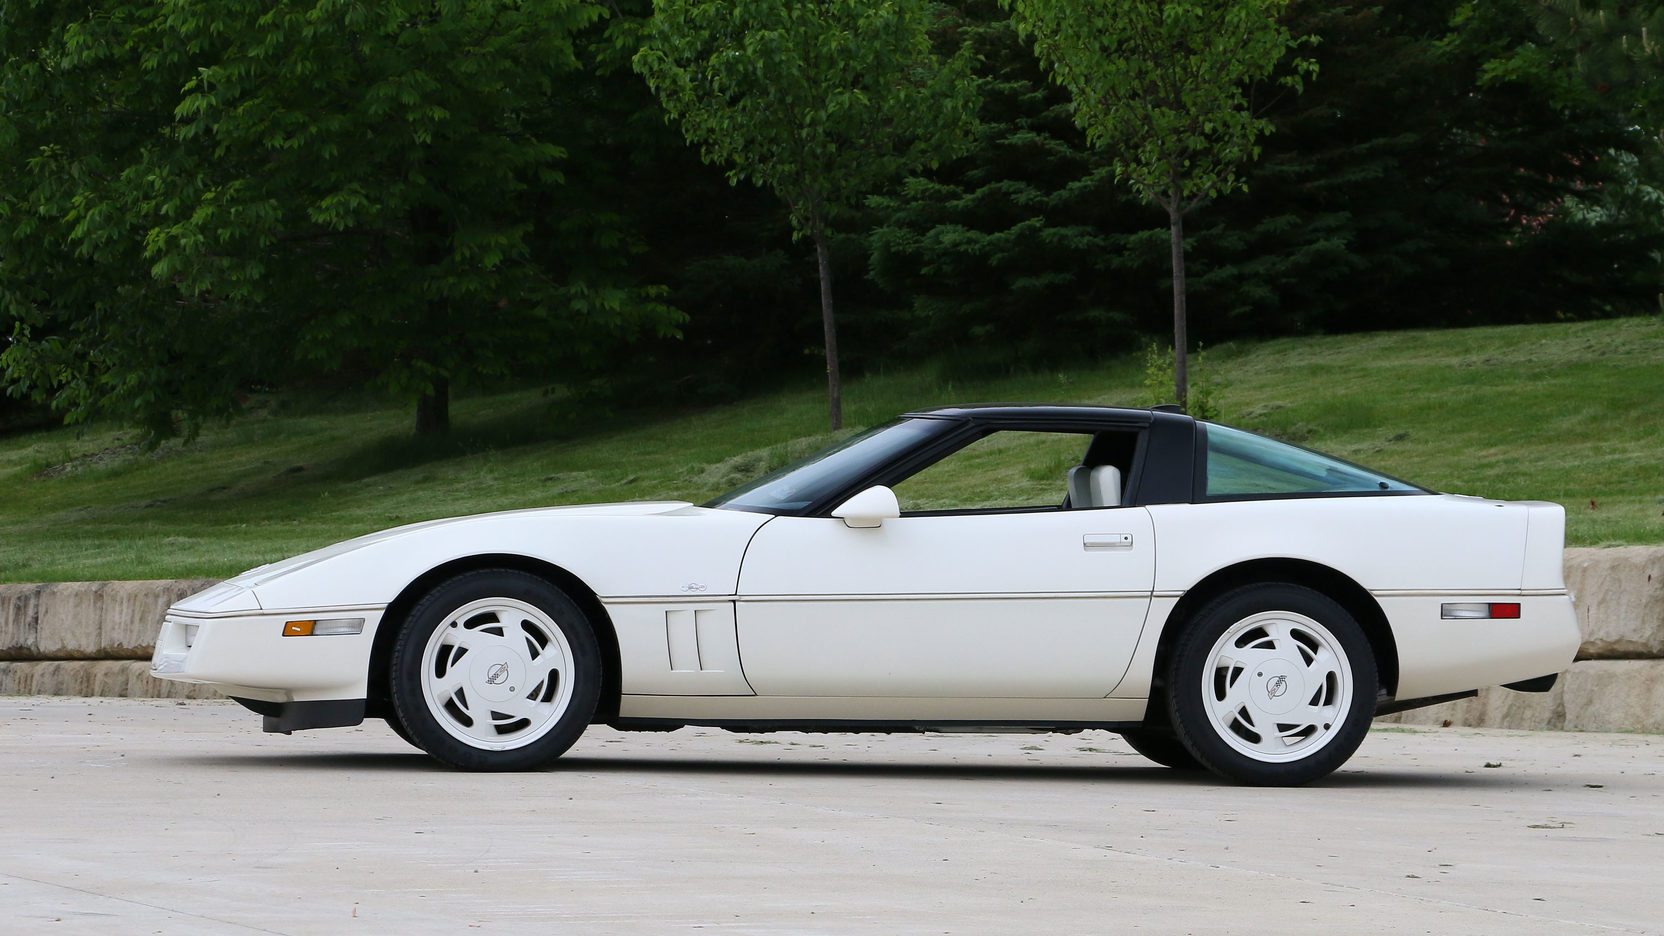 The 35th Anniversary Corvette